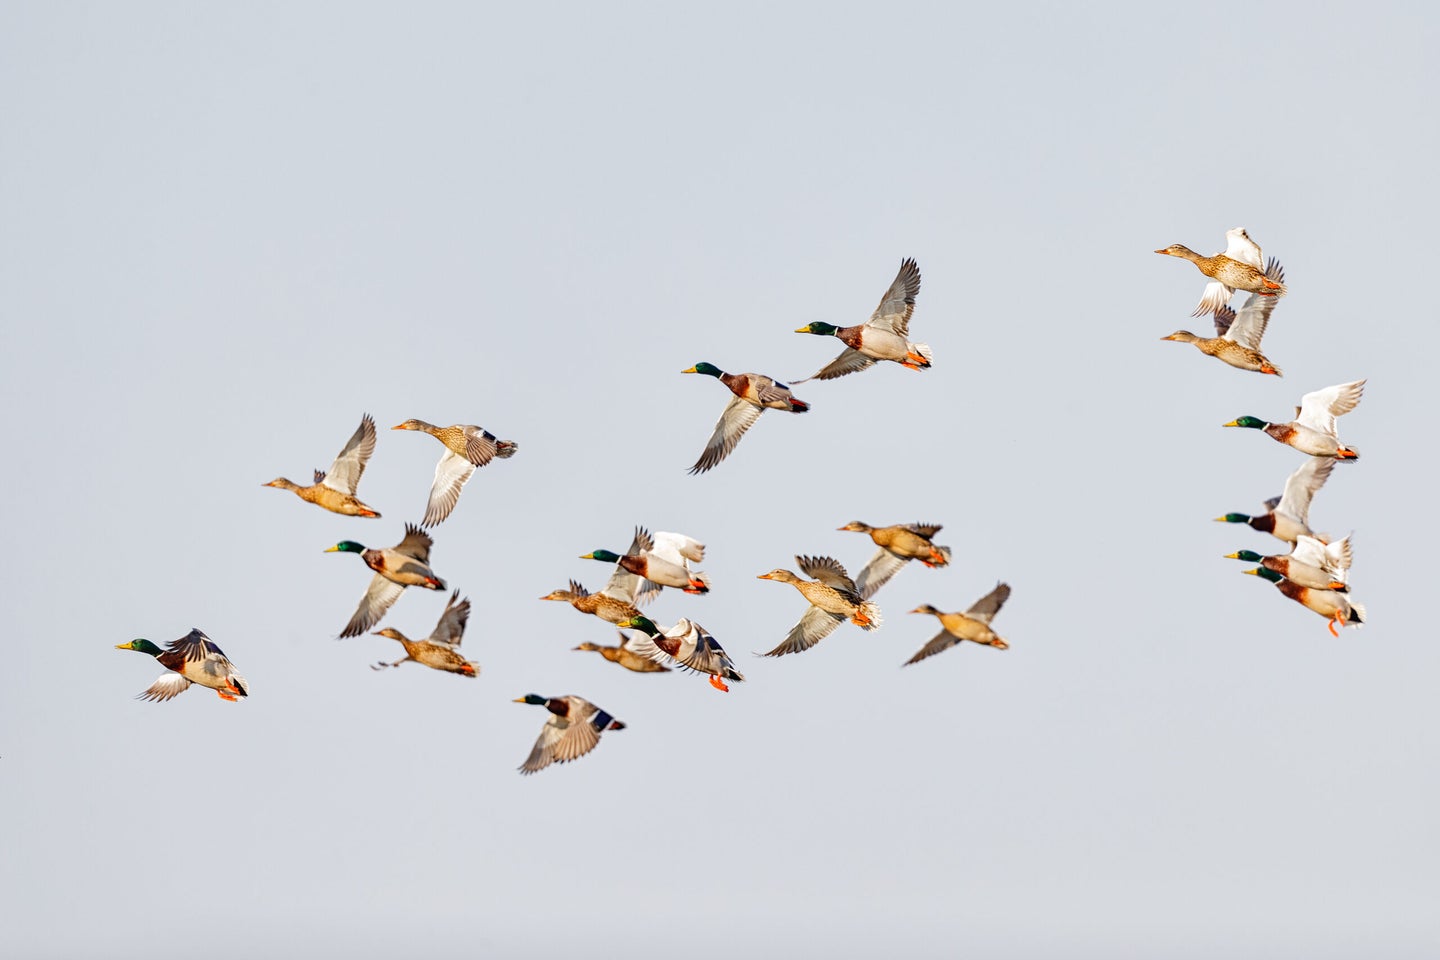 A flock of ducks in flight